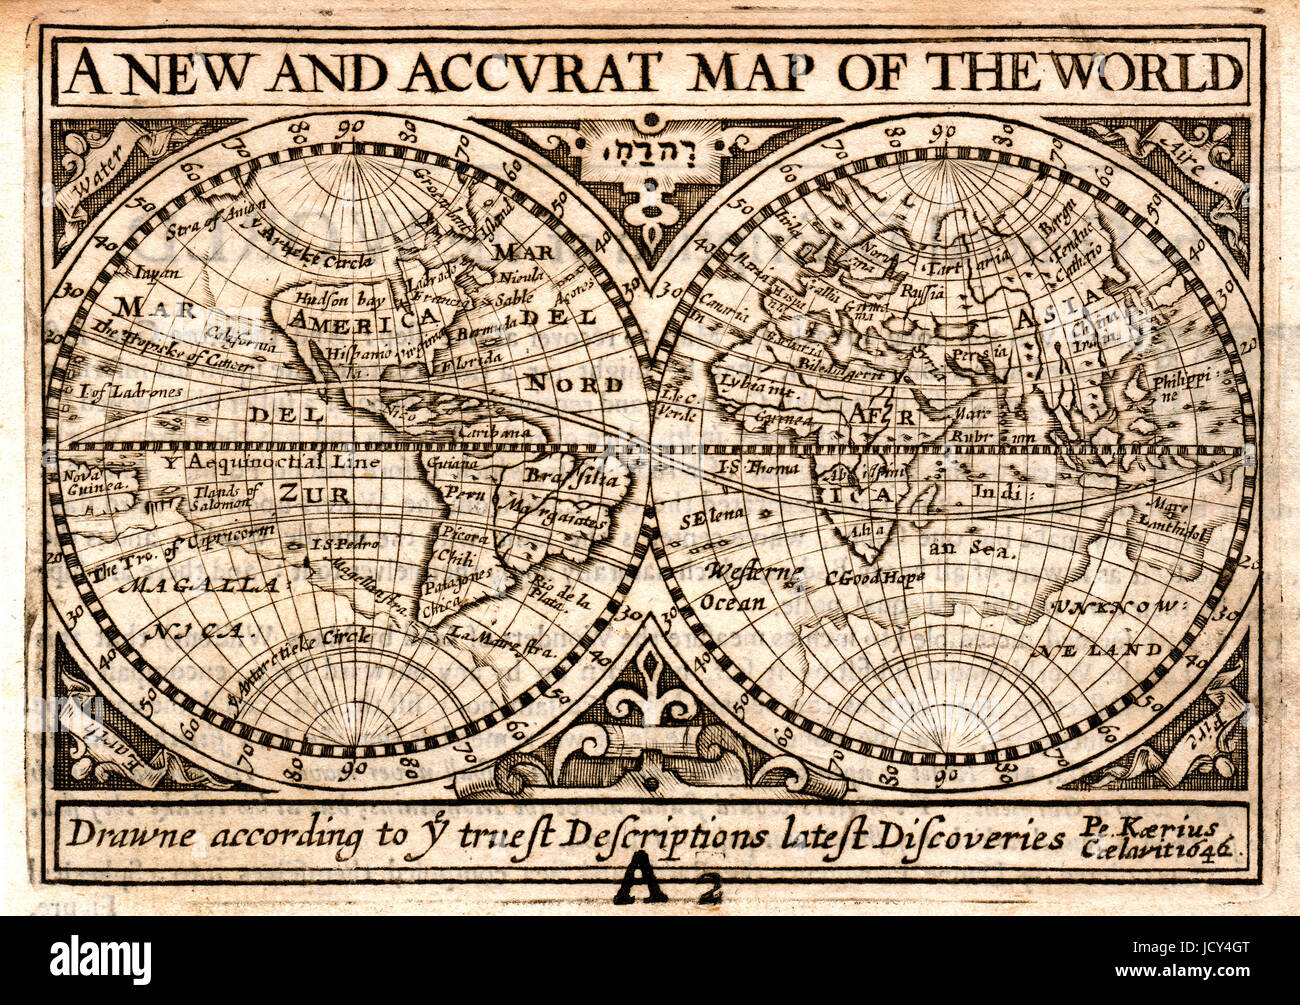 1646 Petrus Kaerius, auch bekannt als Peter van der Keere, Weltkarte in Hemisphäre, die ursprünglich in John Speed's „A Prospect of the Most Famous Parts of the World“ veröffentlicht wurde. Fotografiert von der ursprünglichen antiken Karte. Stockfoto